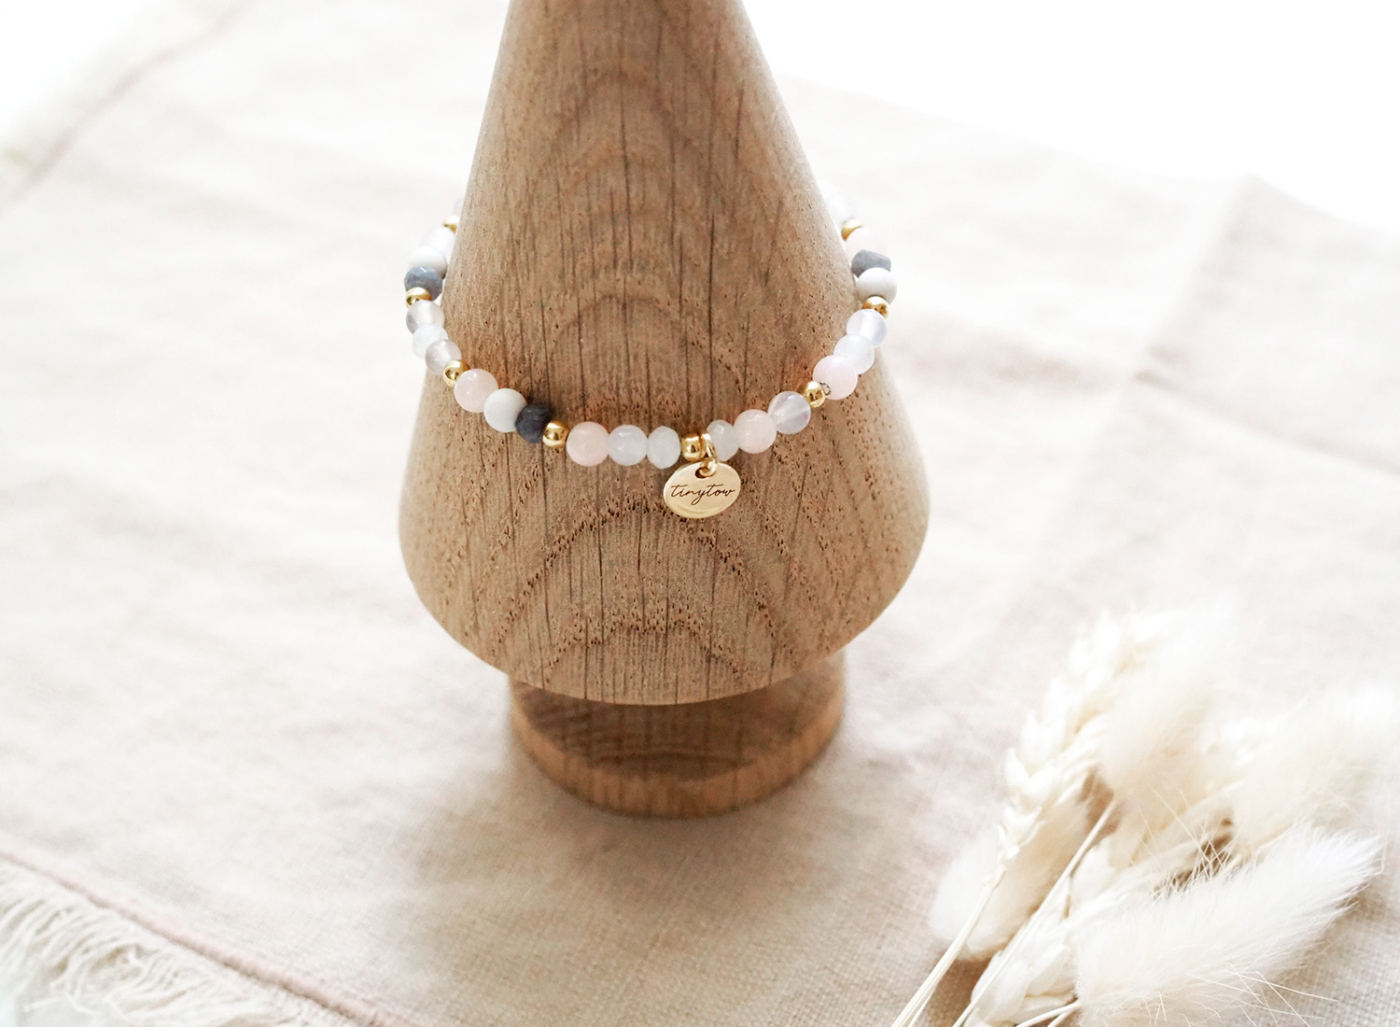 Armband mit Edelsteinen (Jade, Mondstein) und goldenen Perlen mit 14 Karat Goldbeschichtung und kleinem goldenen Herz.